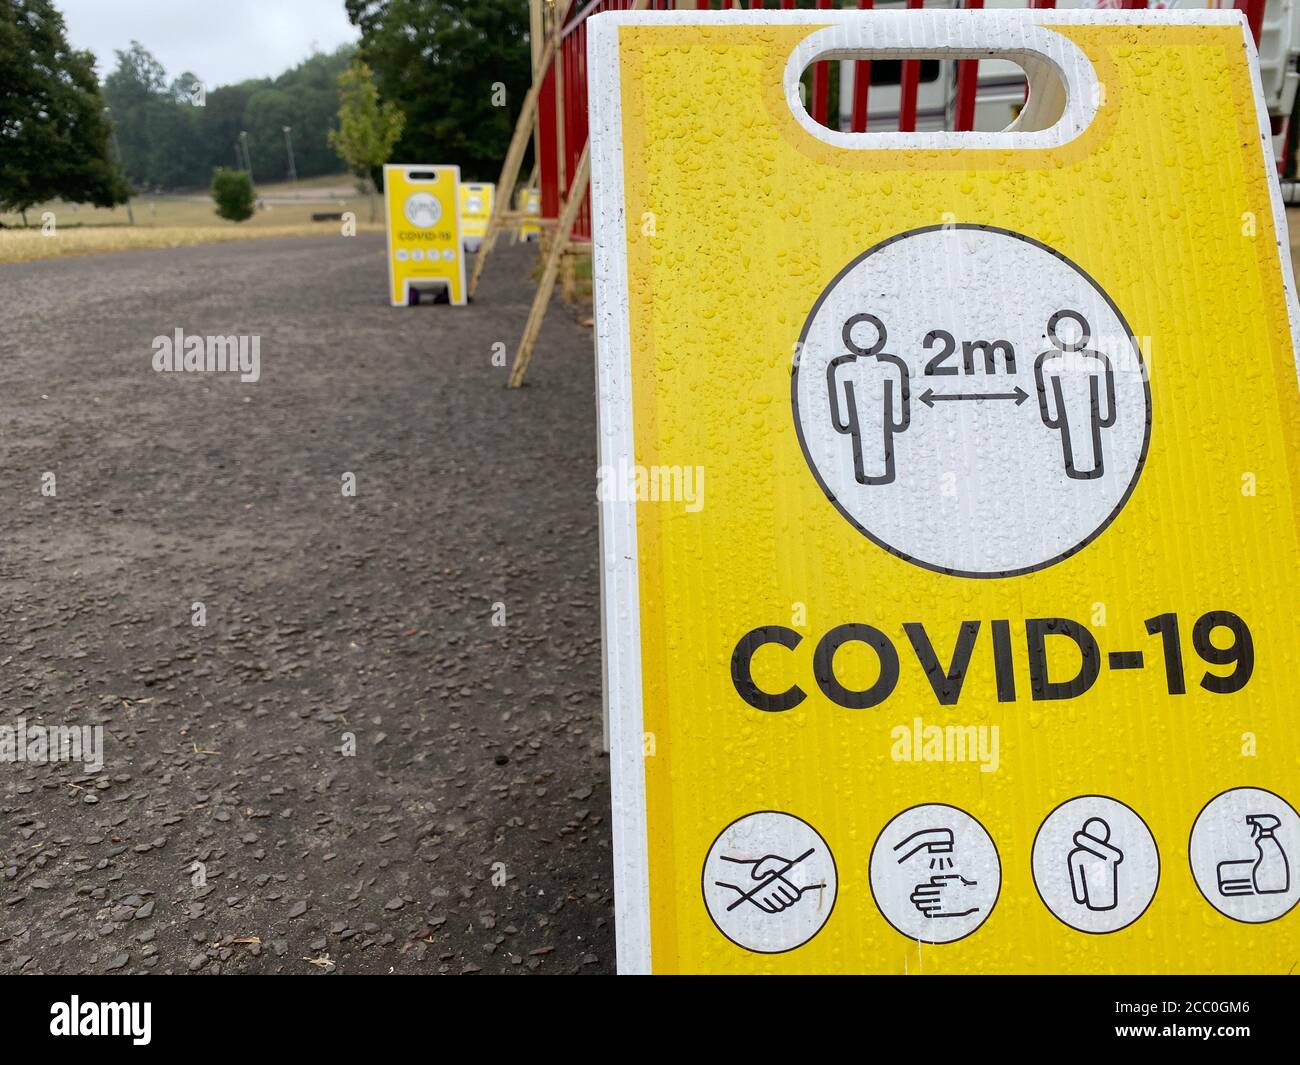 Message de distance sociale pour rester à 2 mètres d'écart pendant le coronavirus Banque D'Images